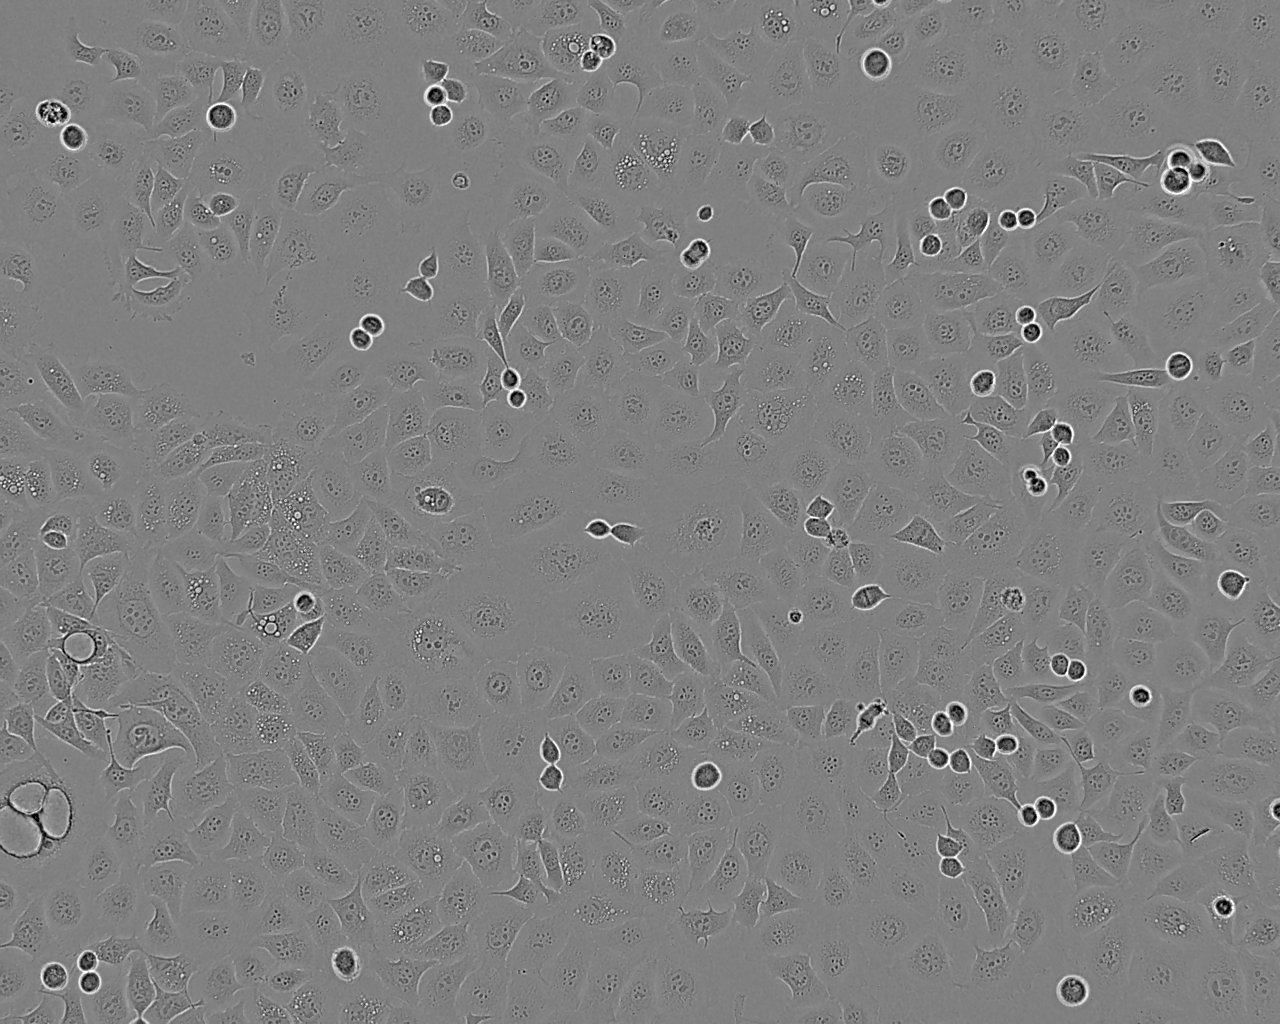 NCI-H2081 Cells|人小细胞肺癌可传代细胞系,NCI-H2081 Cells